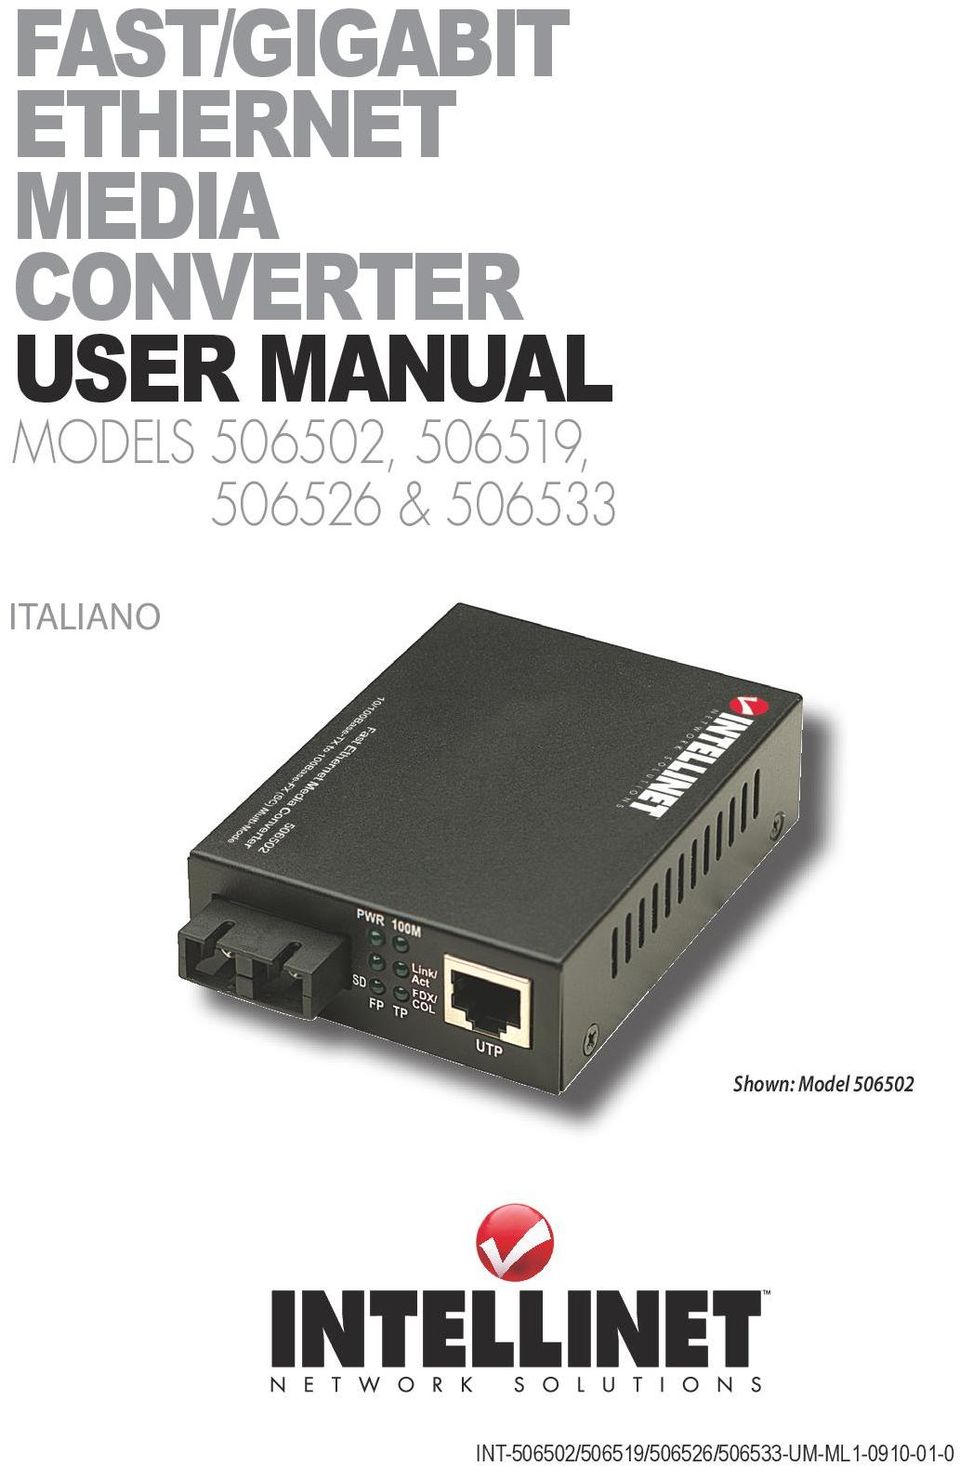 & 506533 Italiano Shown: Model 506502